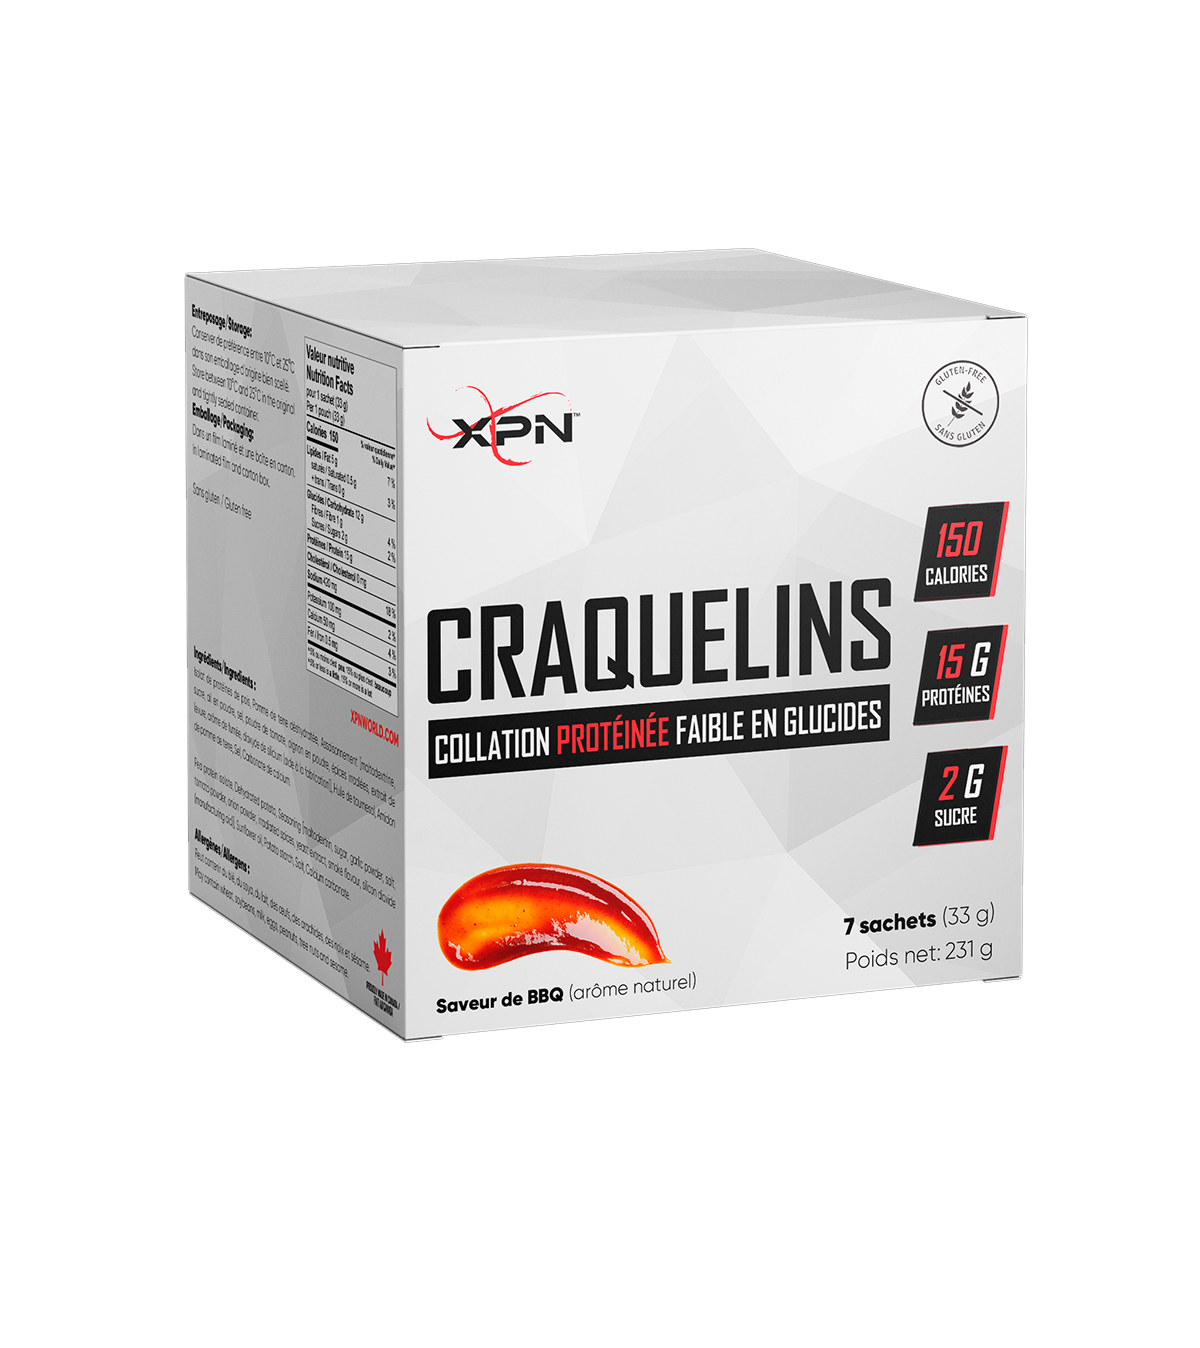 Protein Crackers||Craquelins Protéinés